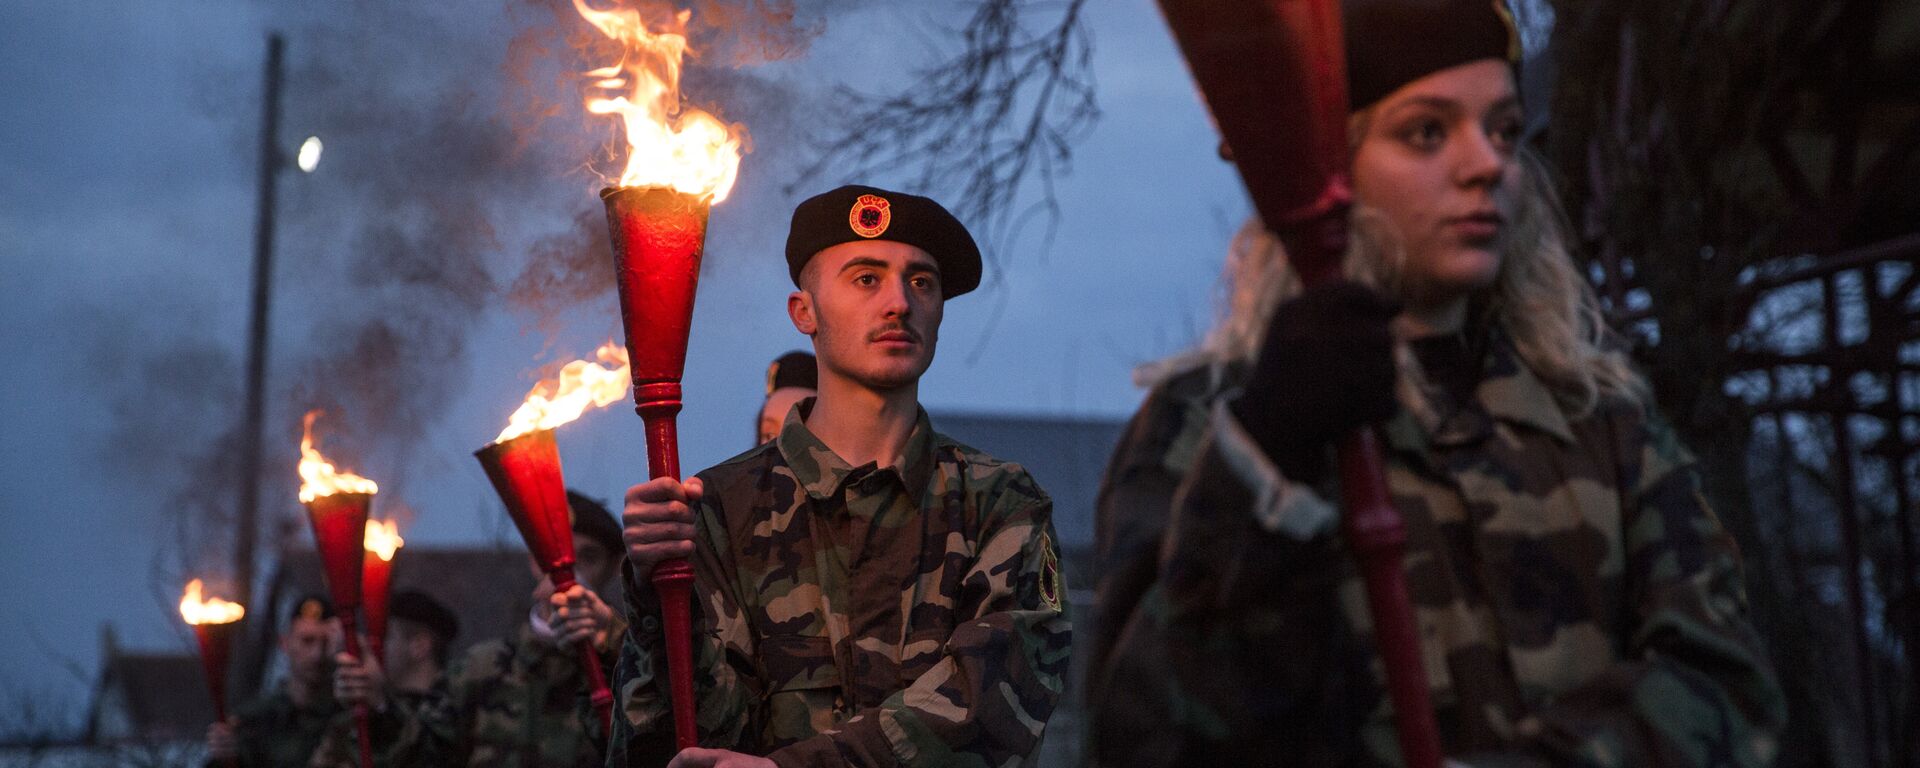 Total: 64308 Kosovski Albanci u uniformama OVK tokom ceremonije Noć požara u selu Prekaz 7. marta 2017. na dan kad je 1998. ubijen Adem Jašari. - Sputnik Srbija, 1920, 26.12.2017